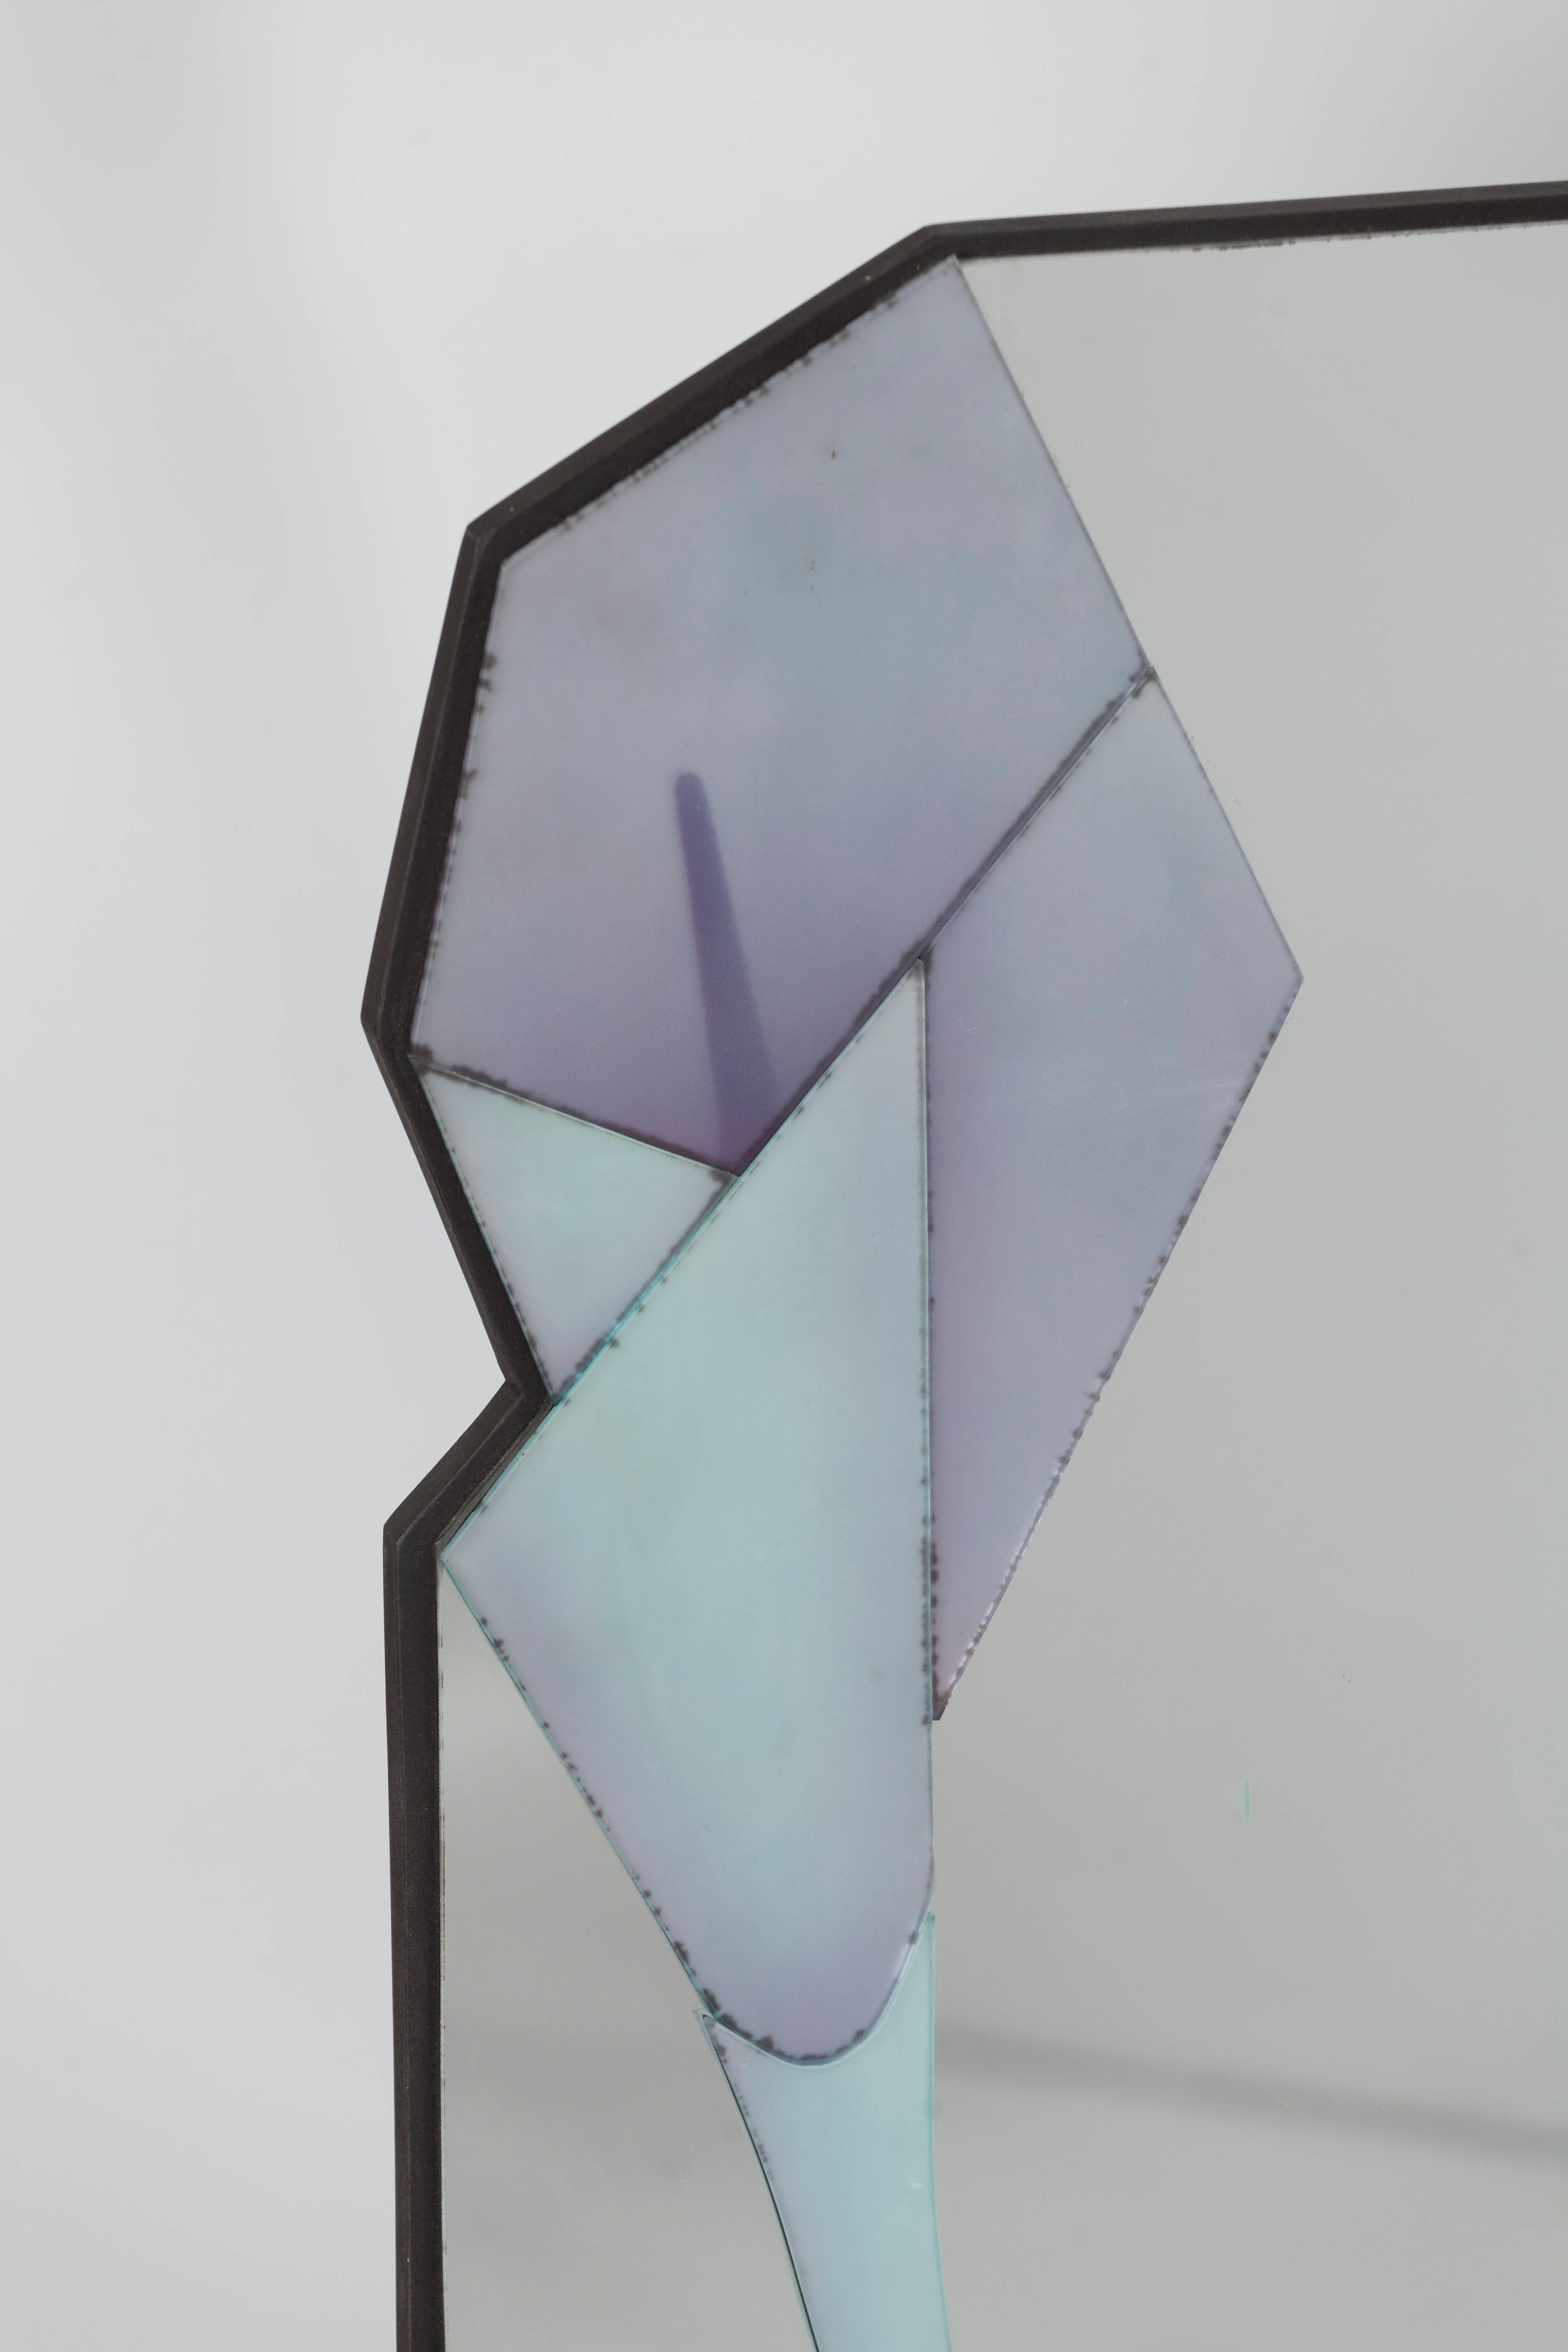 Asymmetrischer Wandspiegel mit mehreren verschiedenen Schichten von David Marshall.
David Marshall entwirft und fertigt seit 1972 Möbelzubehör und hat sich auf handgeschnitzte und farbige Spiegel spezialisiert. Alle Spiegel werden in der Fabrik in